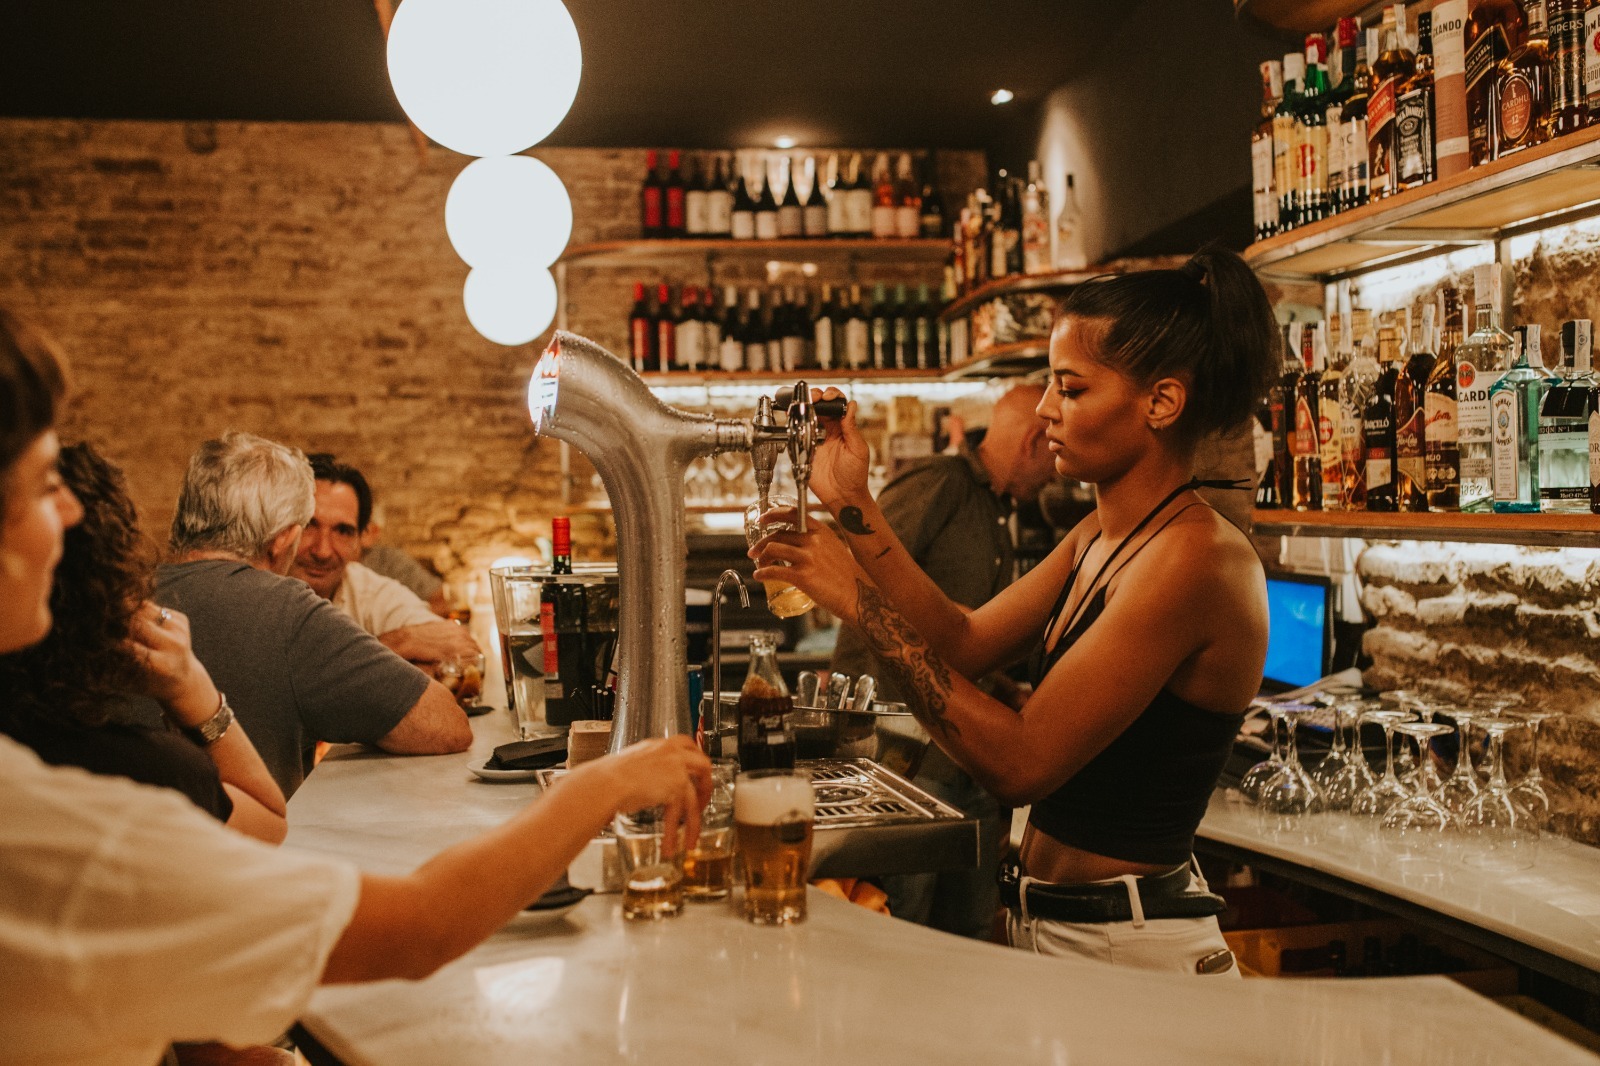 La ruta de la cerveza en Córdoba: disfruta de cañas en bares con encanto